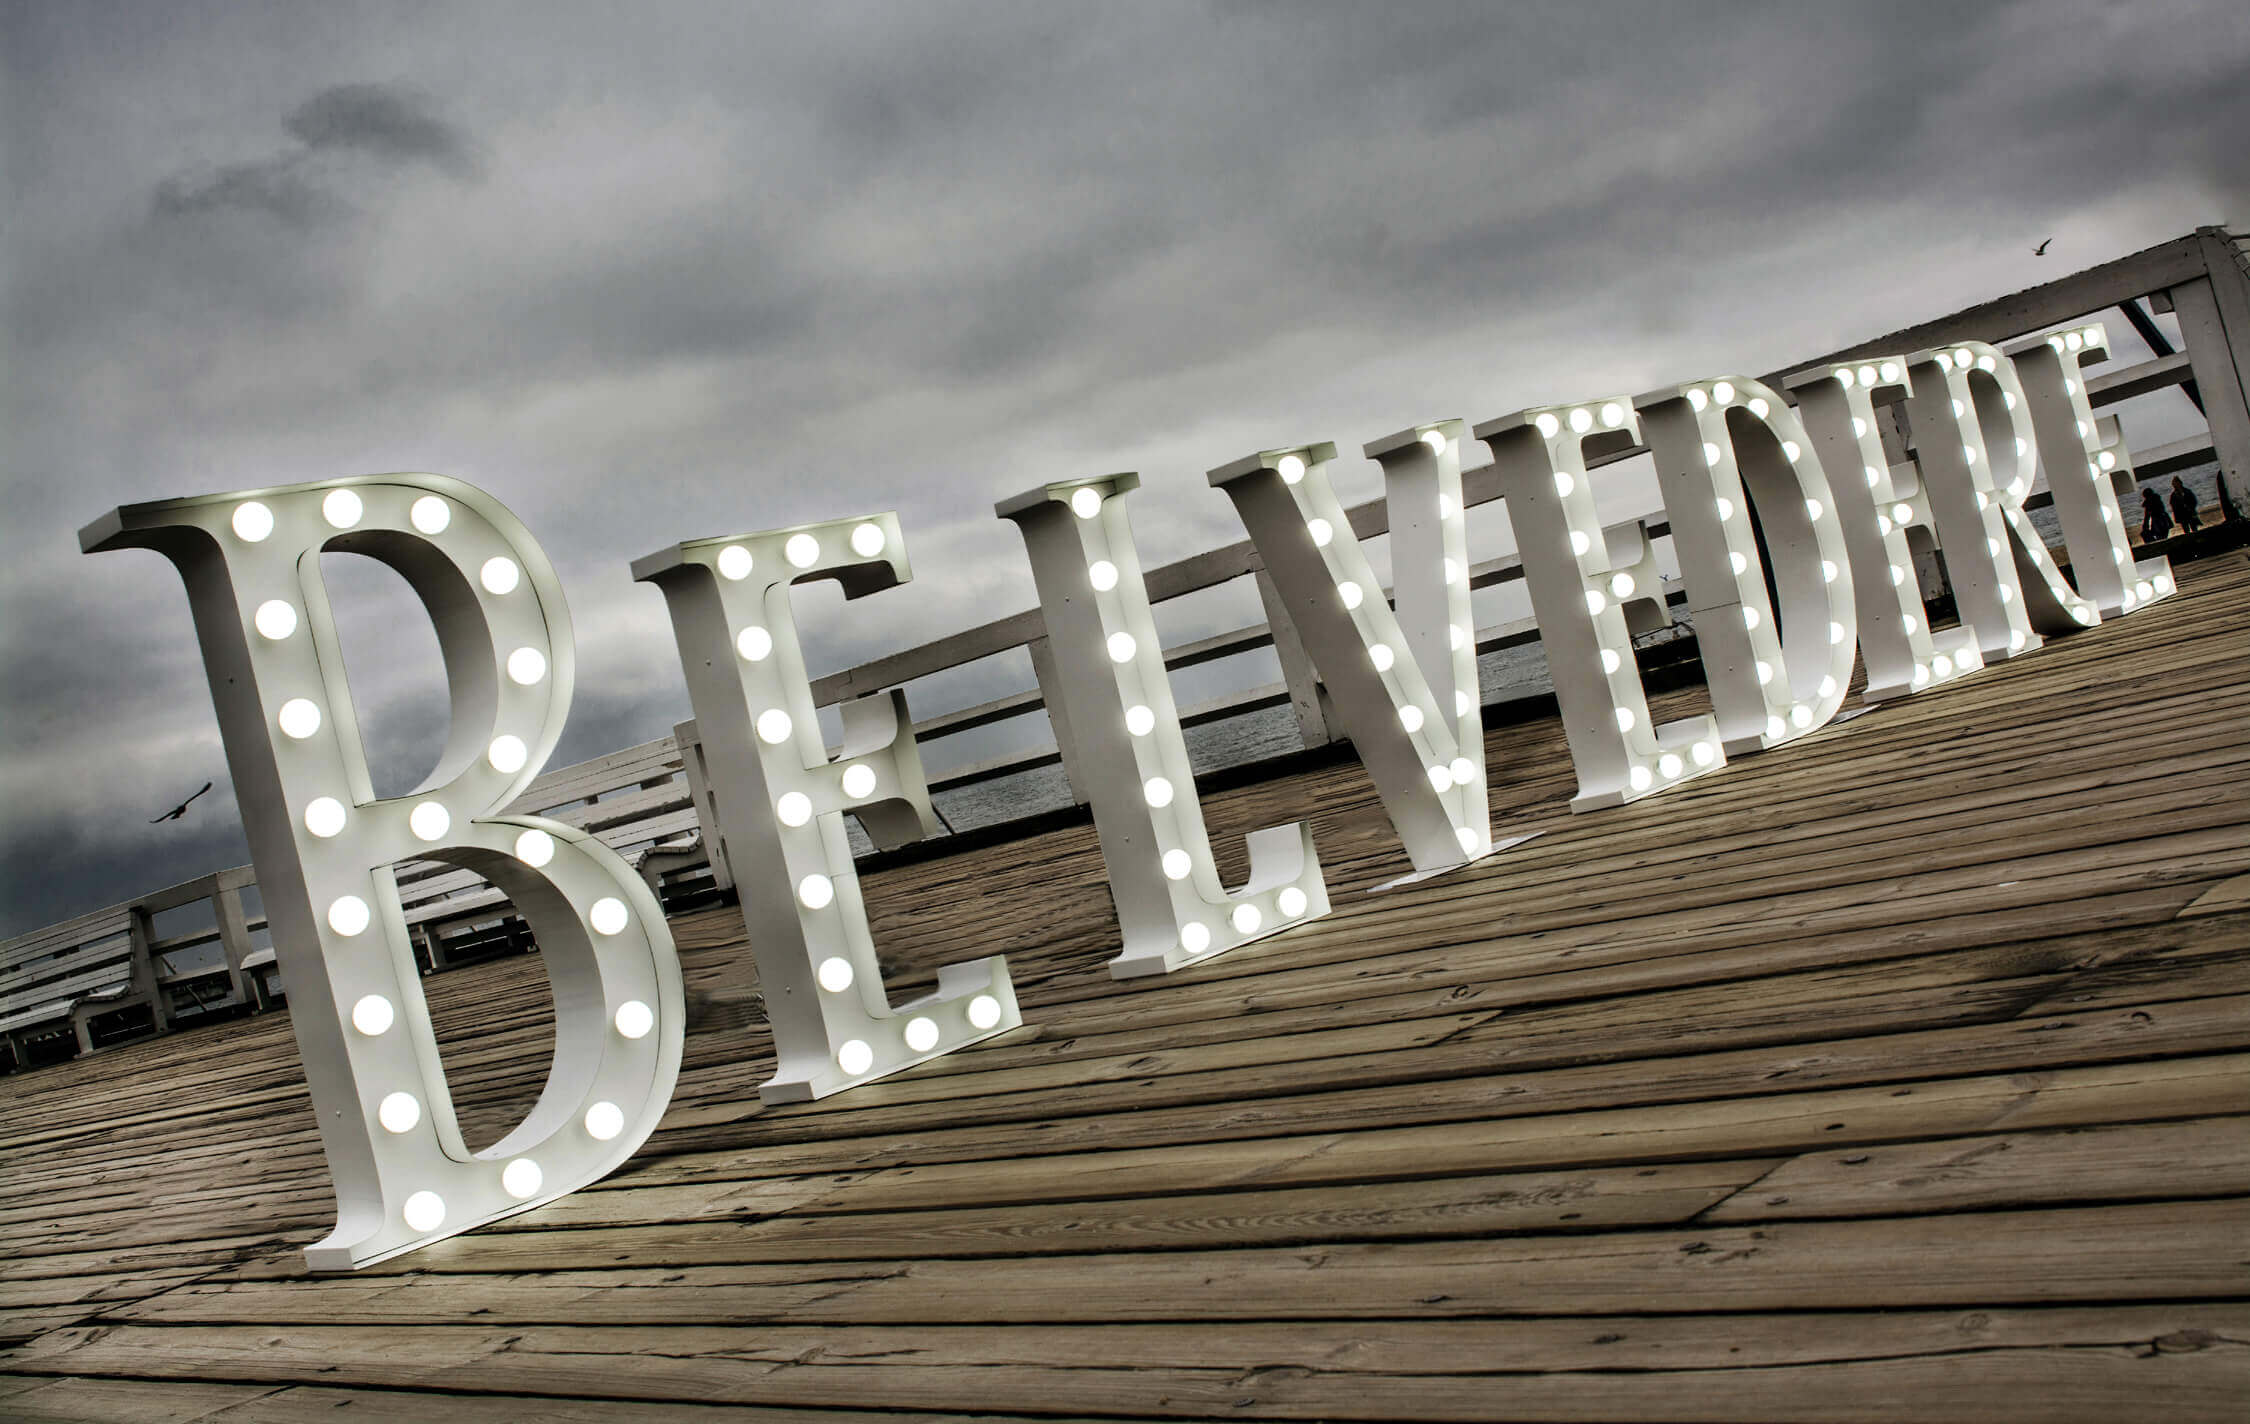 Belvedere - Belvedere - Stehende Buchstaben mit Glühbirnen auf der Seebrücke